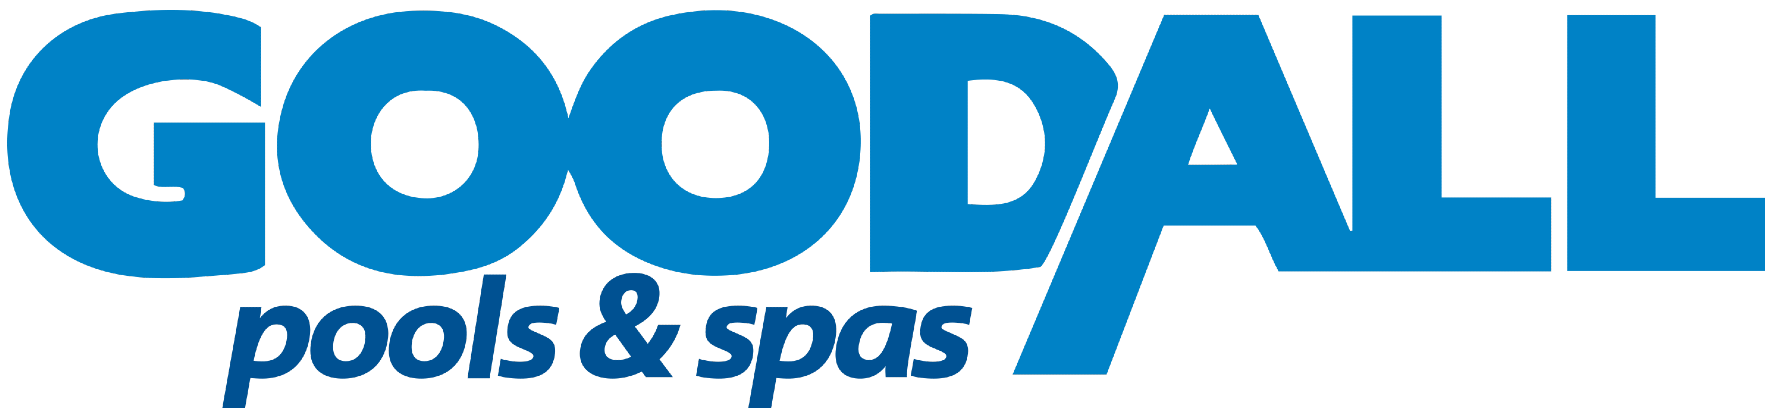 Goodall Pools & Spas logo